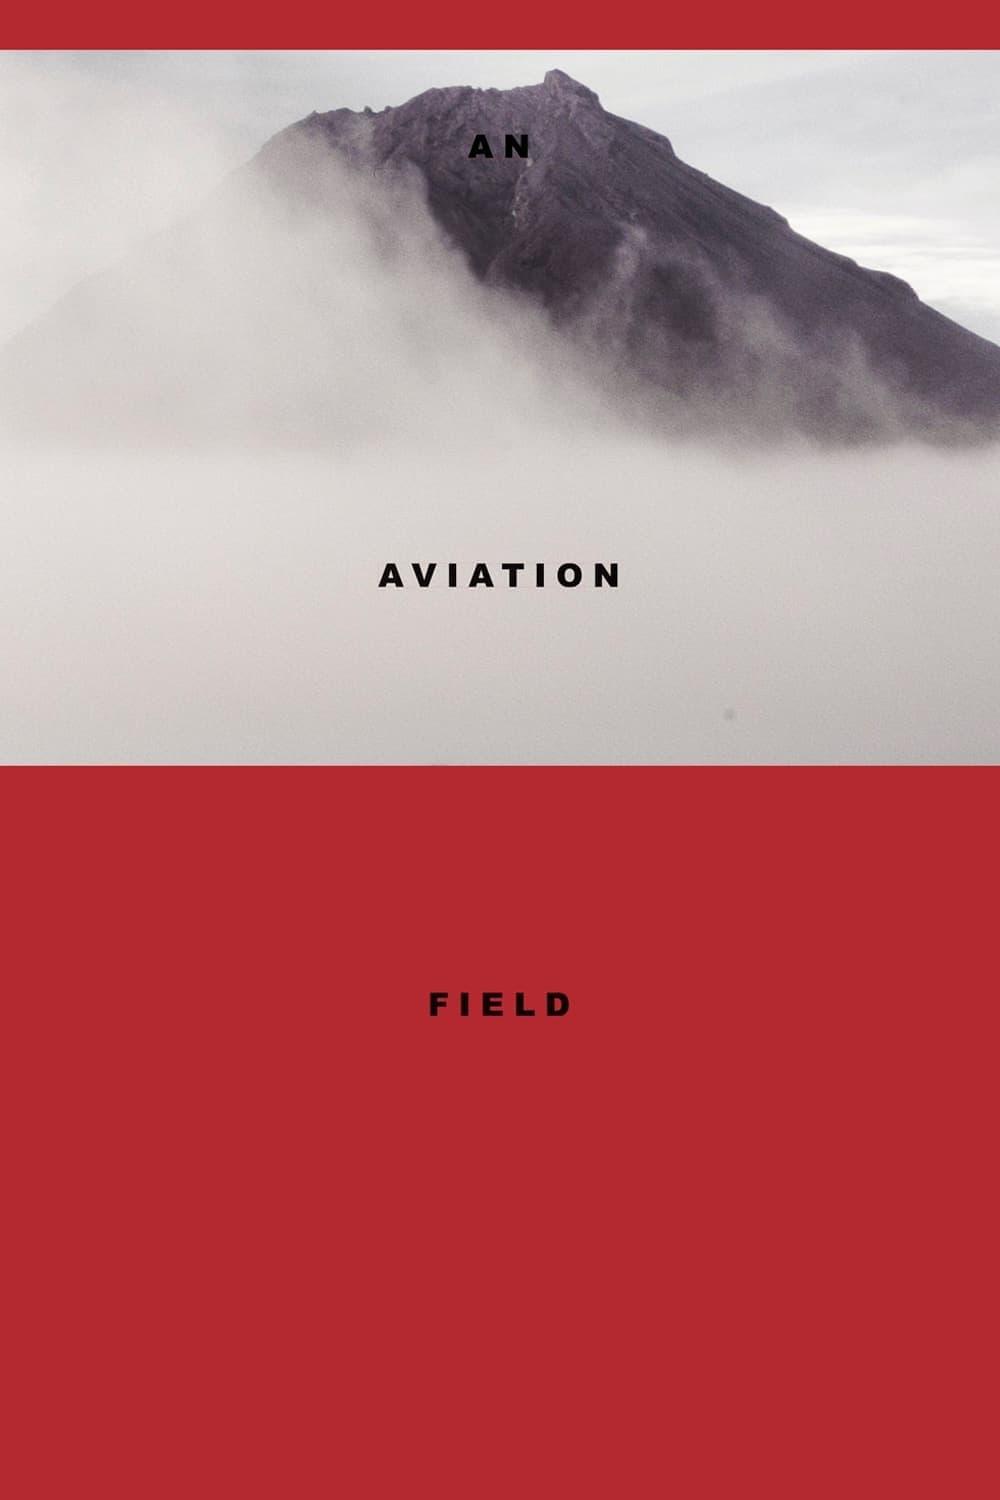 An Aviation Field poster